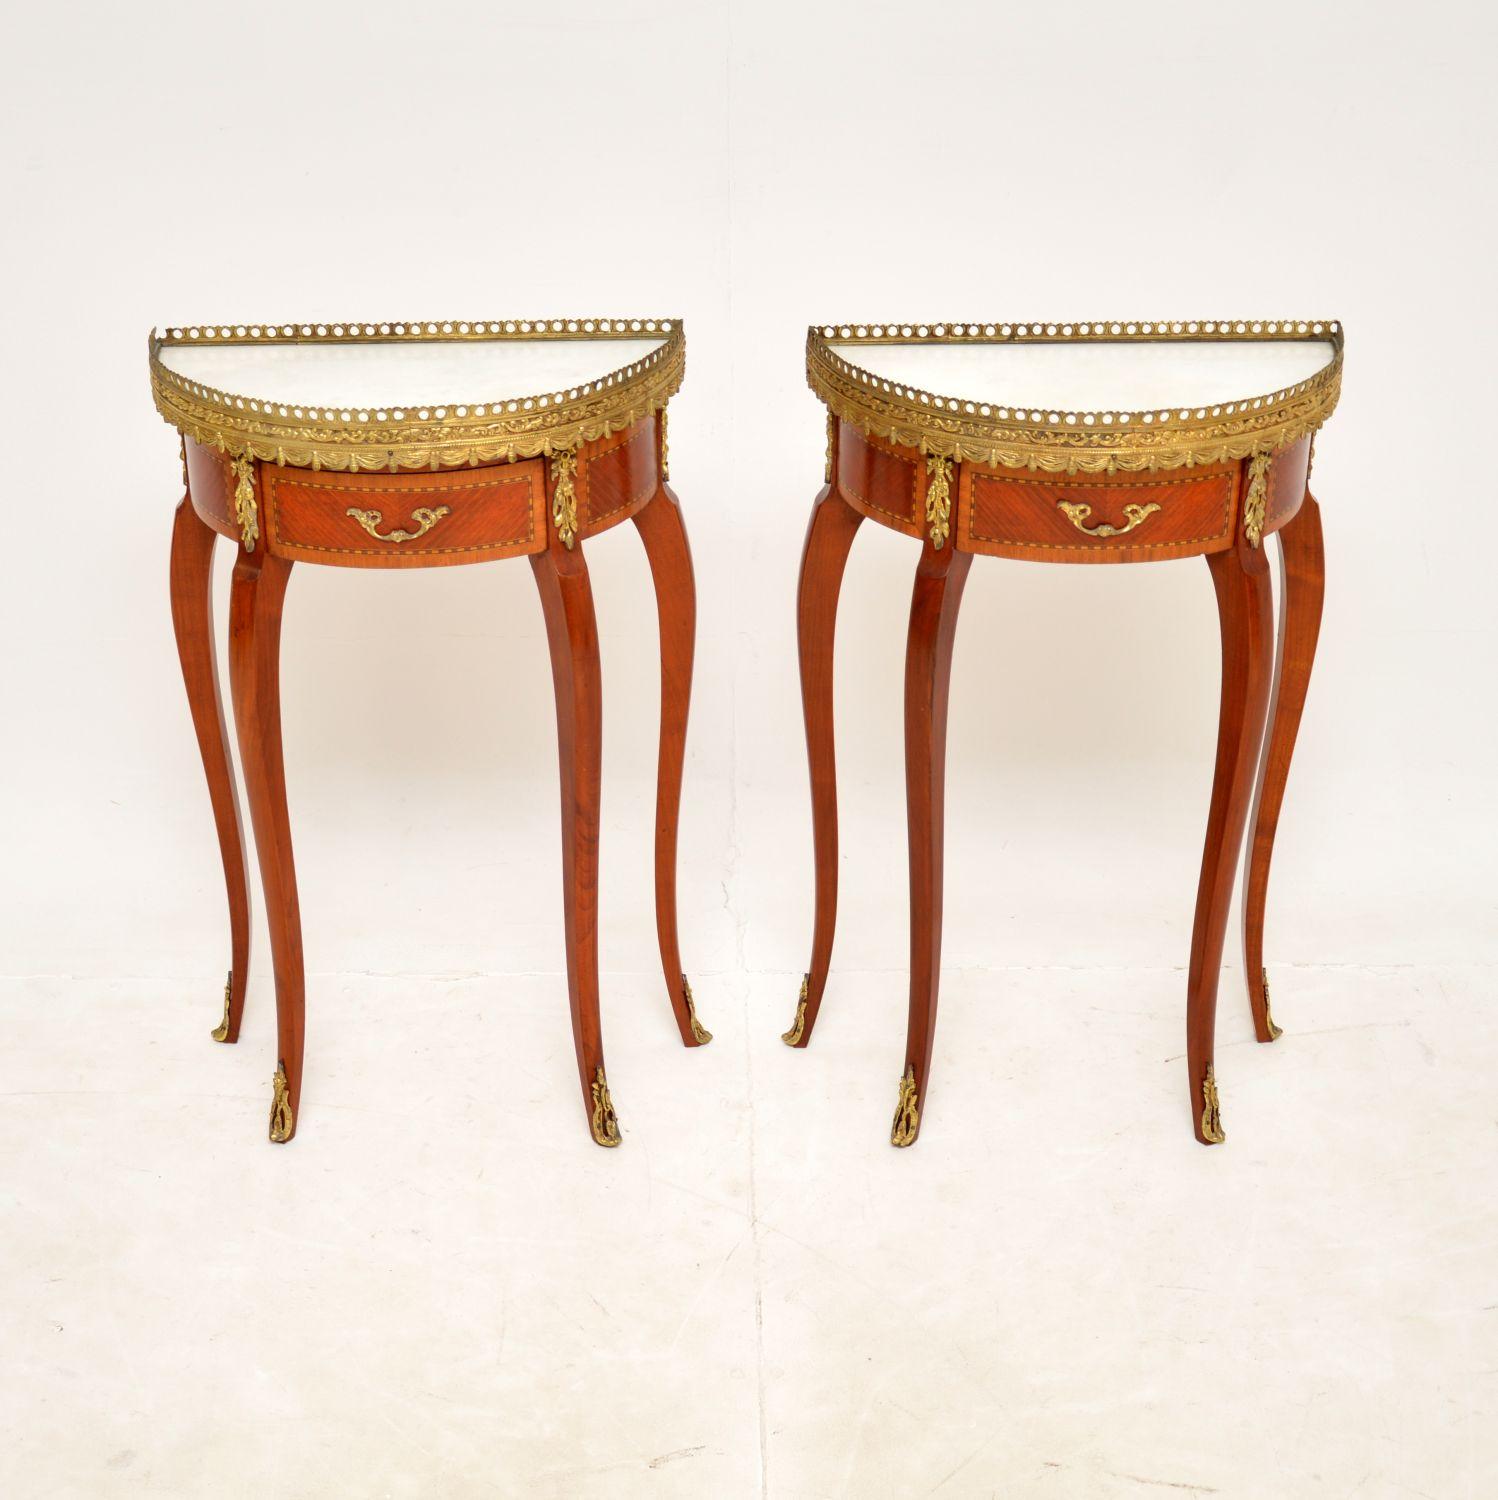 Une superbe paire de tables d'appoint Demilune françaises anciennes, datant des années 1950.

Ils sont d'une taille très utile et d'une superbe qualité. Elles sont dotées de plateaux en marbre blanc, de montures en métal doré de haute qualité et